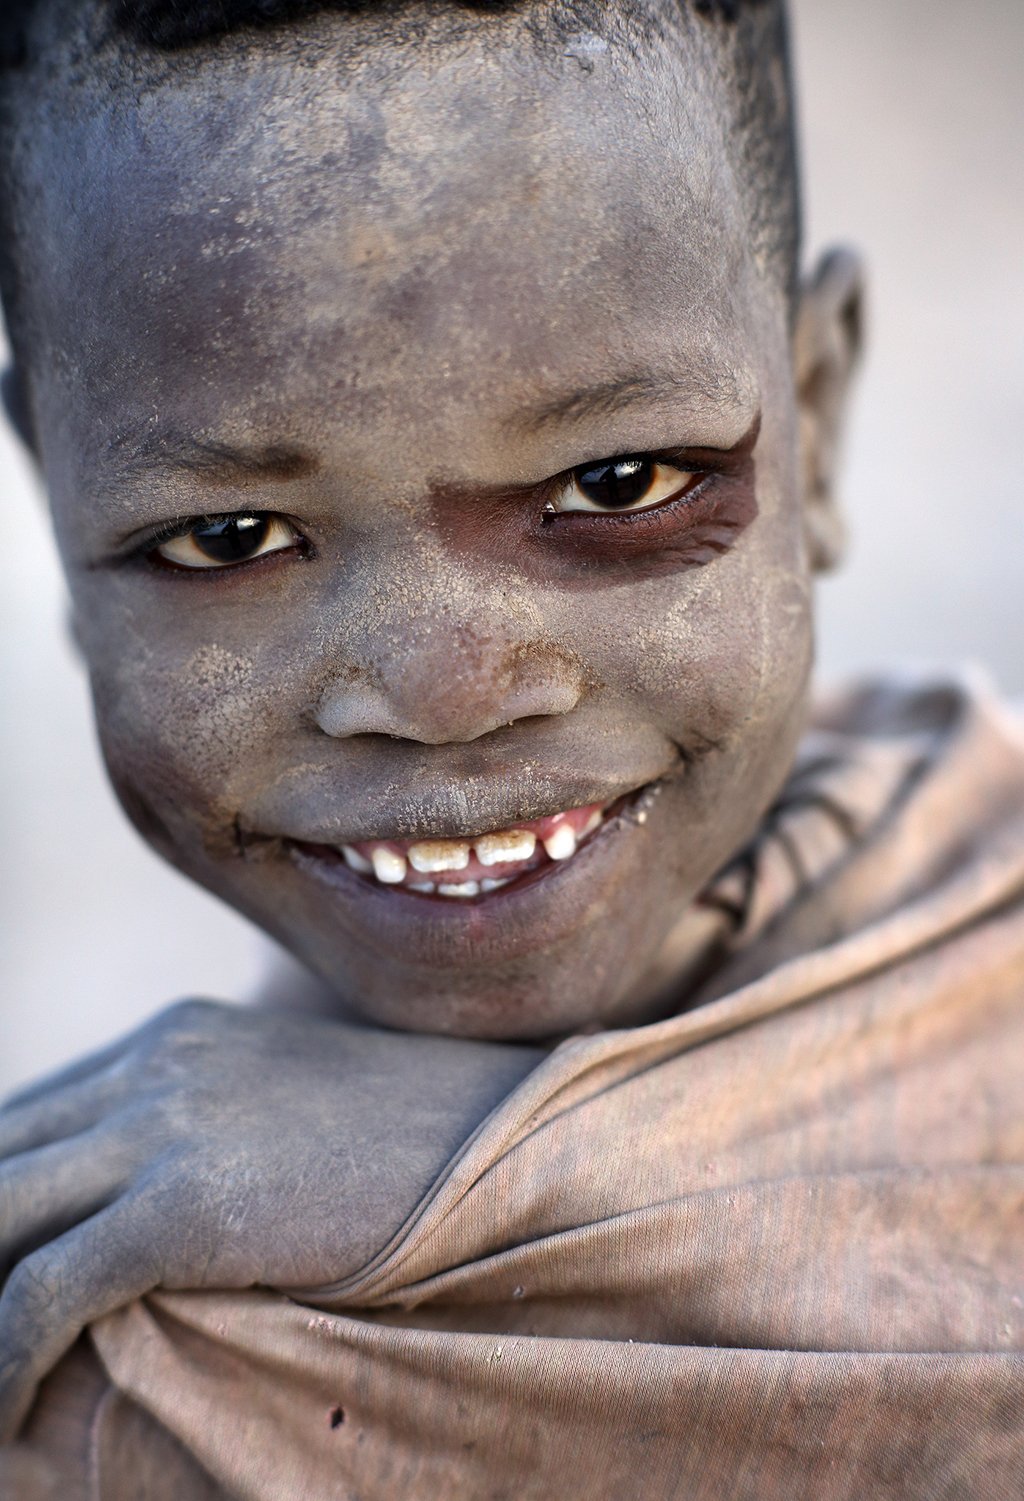 Menino de tribo do Vale do Omo, na Etiópia | Foto: Dietmar Temps/http://dietmartemps.com/